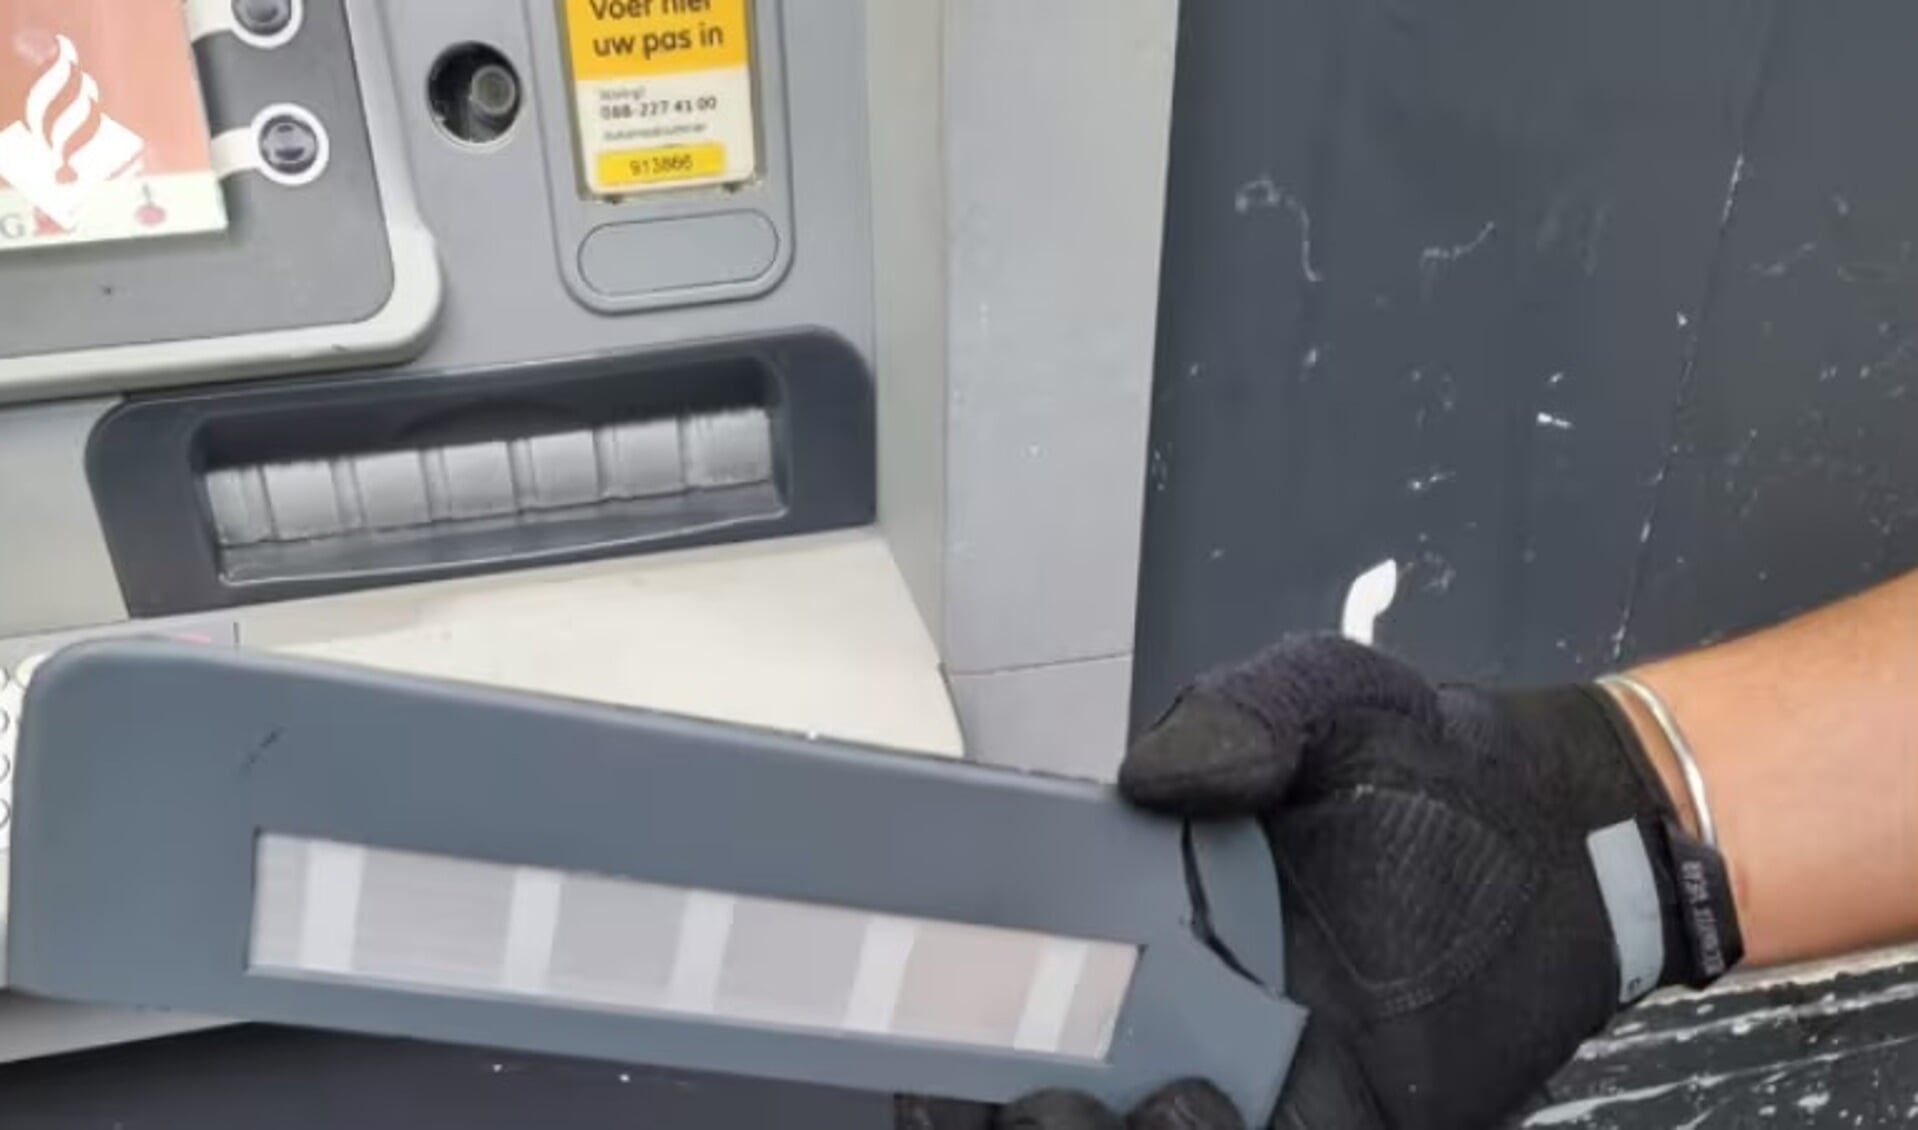 Een cashtrap is een metalen plaatje die wordt geplaatst op de geldmond van een geldautomaat waardoor het gepinde geld vast komt te zitten. Foto: Politie Rotterdam